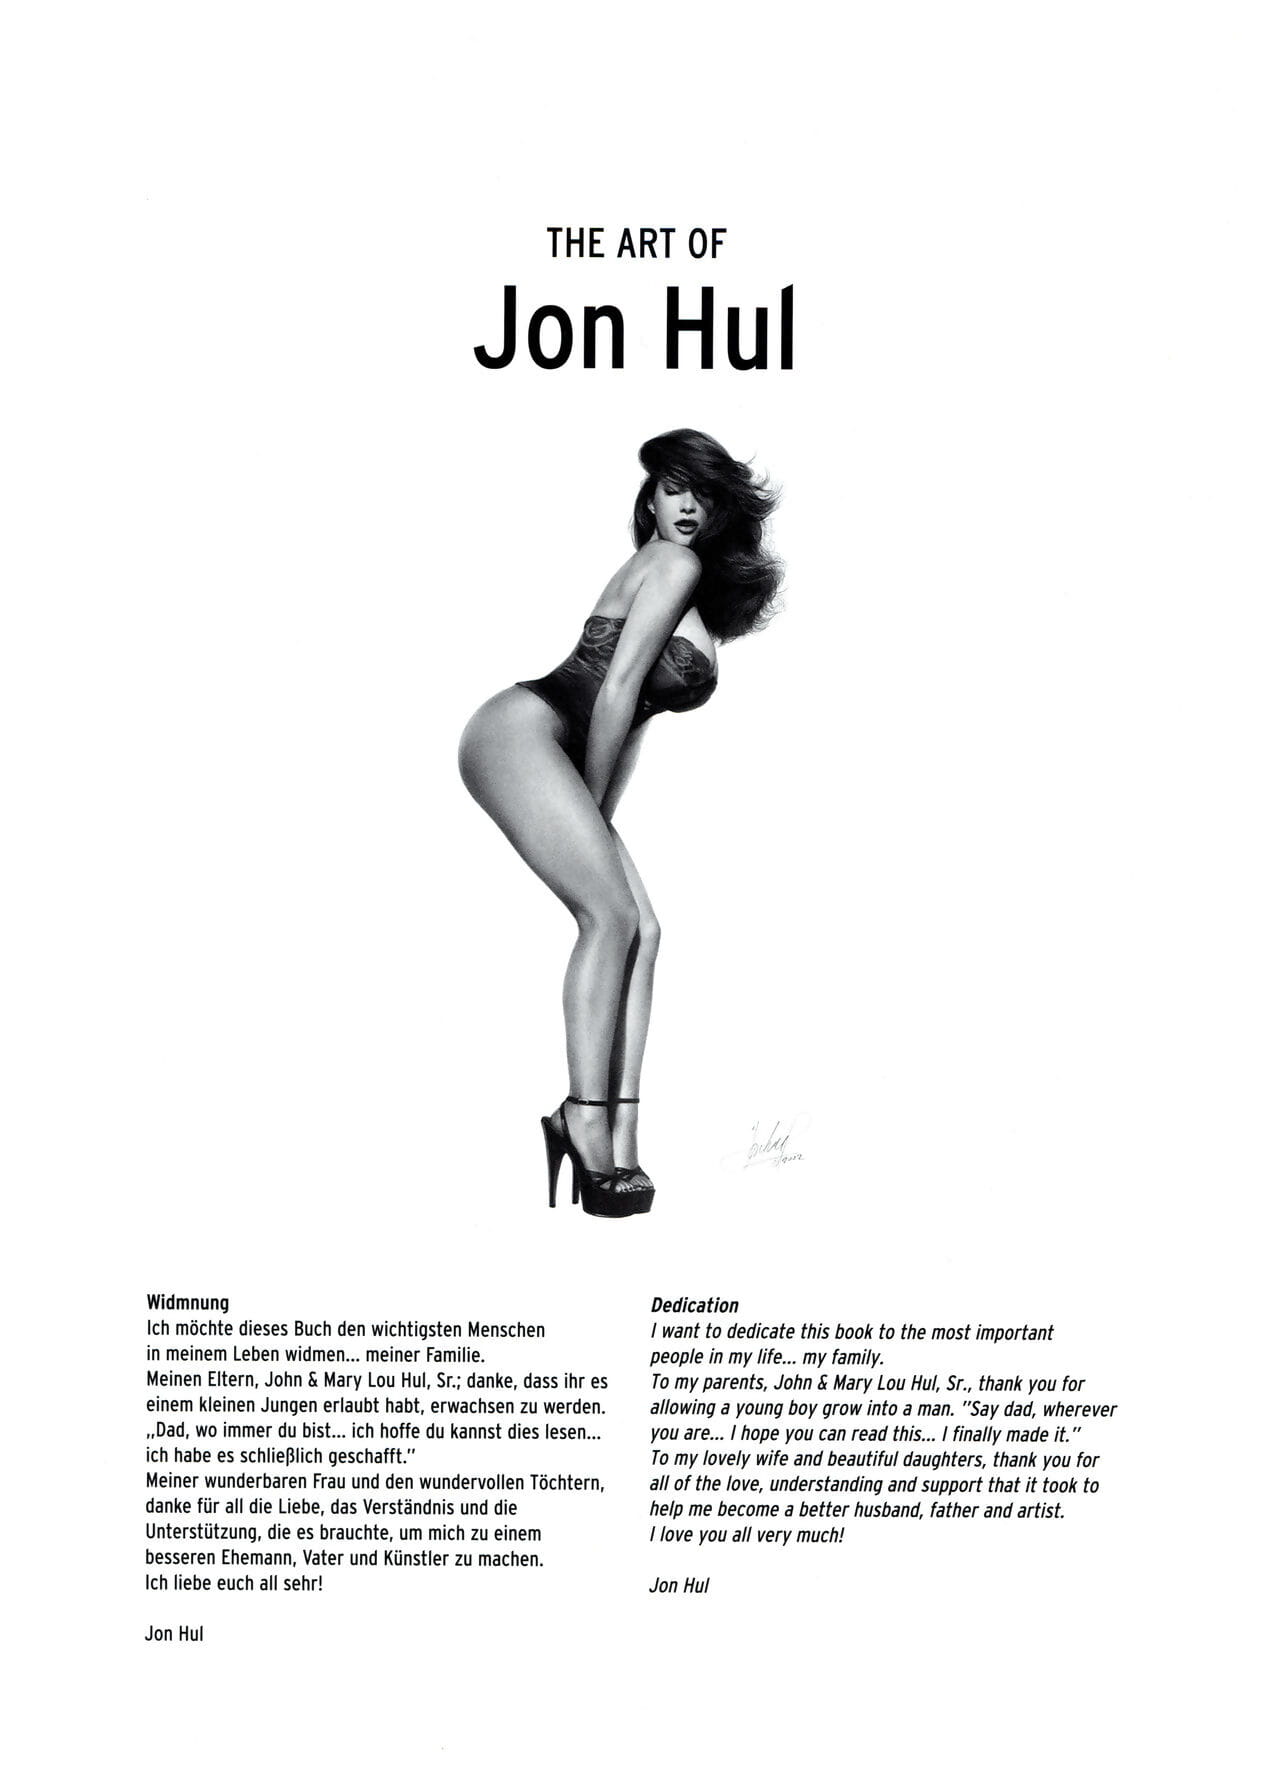 Art Fantastix #12 - The Art of Jon Hul page 1